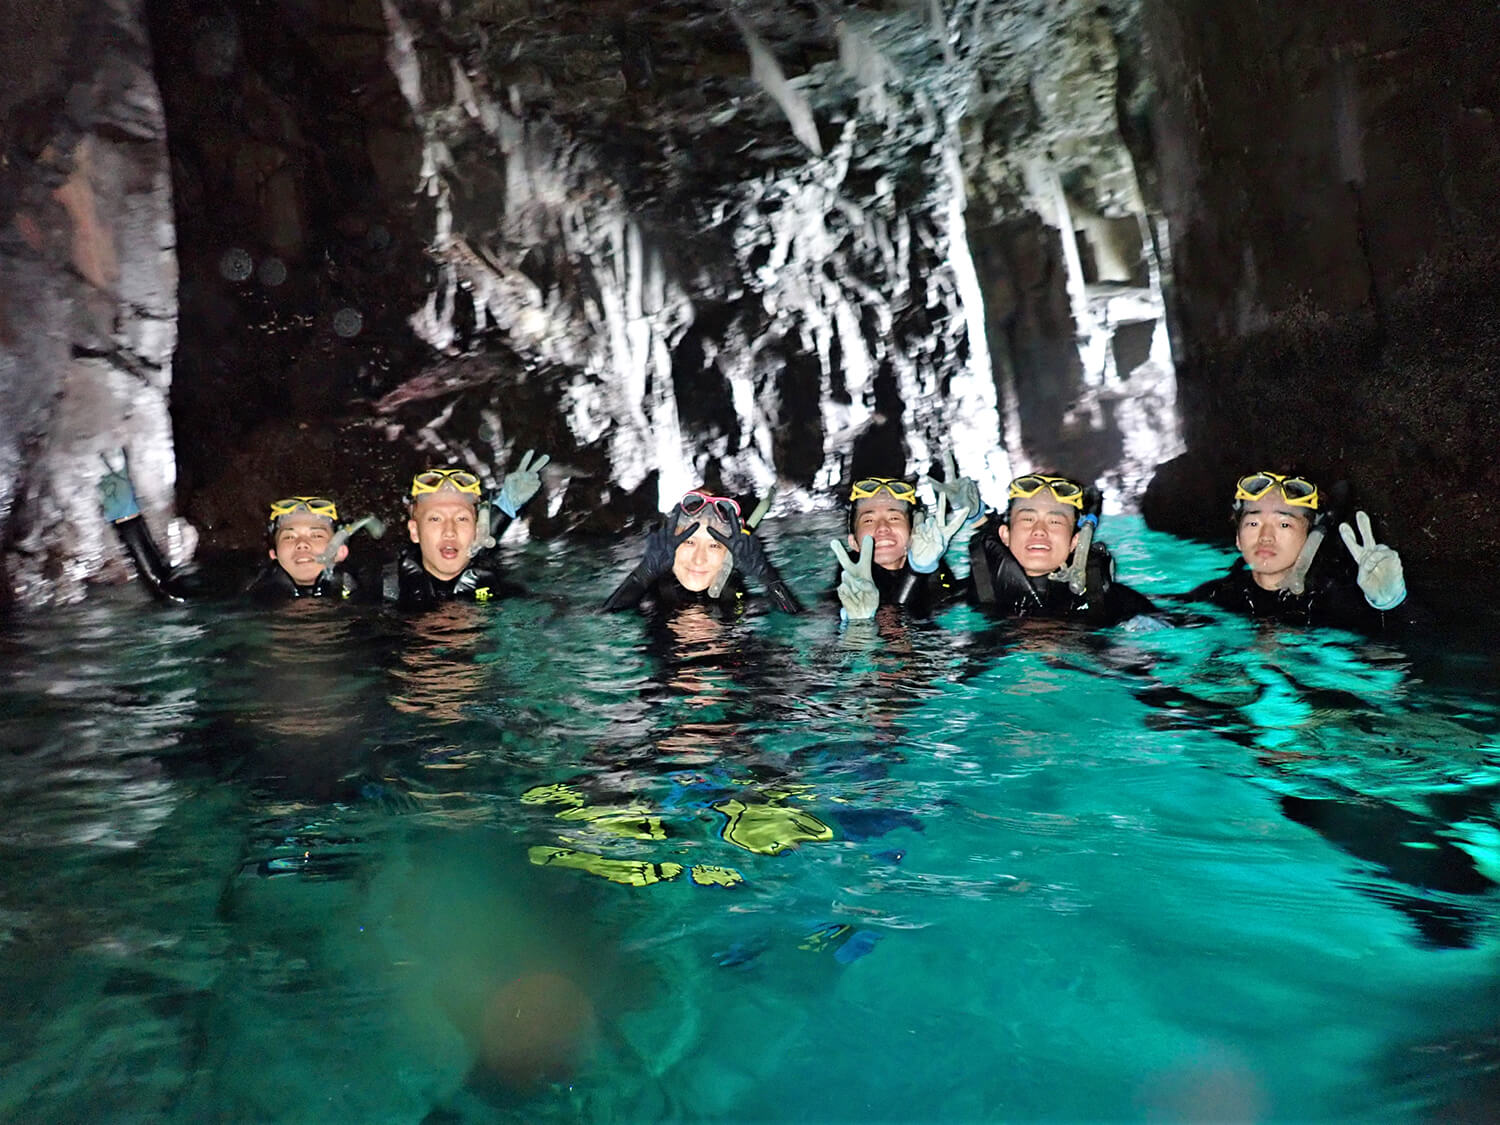 神秘的な雰囲気が漂う人気スポット「青の洞窟」。エメラルドグリーンに輝く水面の美しさは圧巻